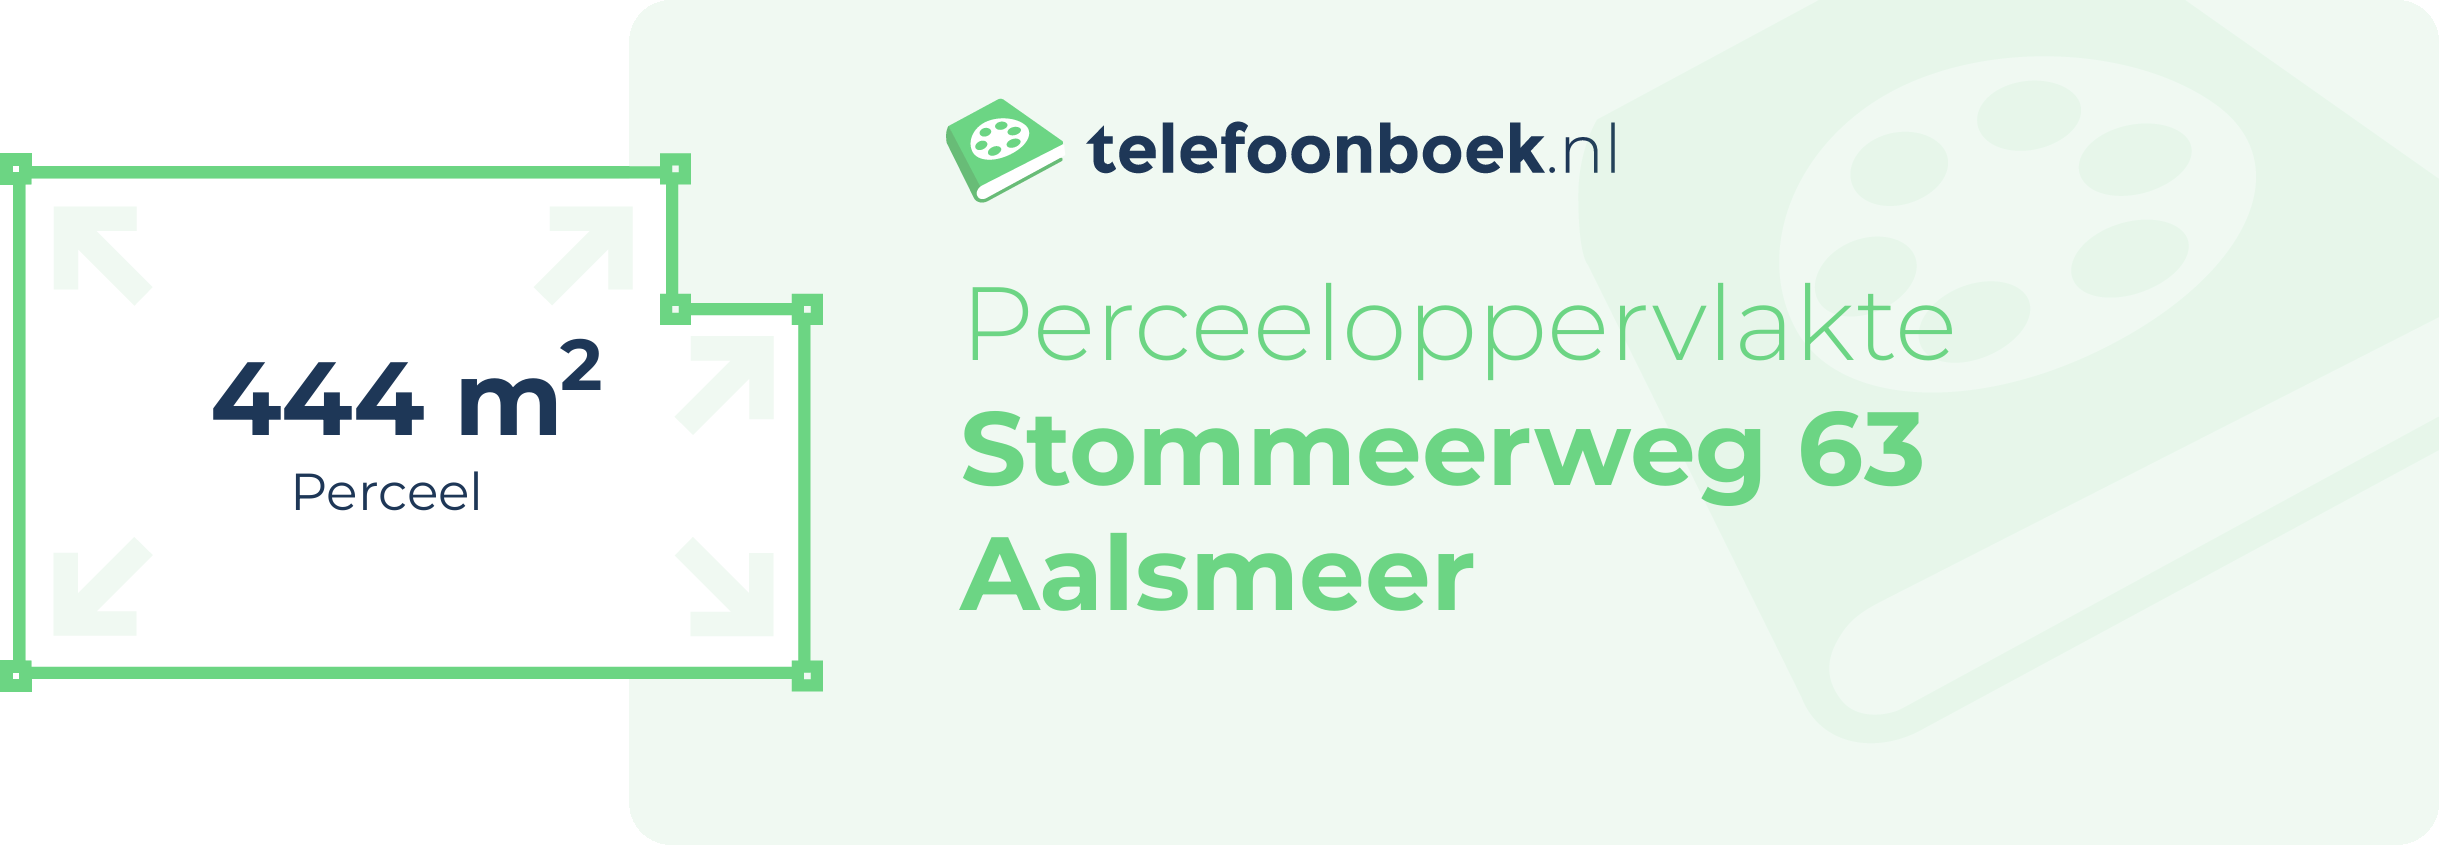 Perceeloppervlakte Stommeerweg 63 Aalsmeer